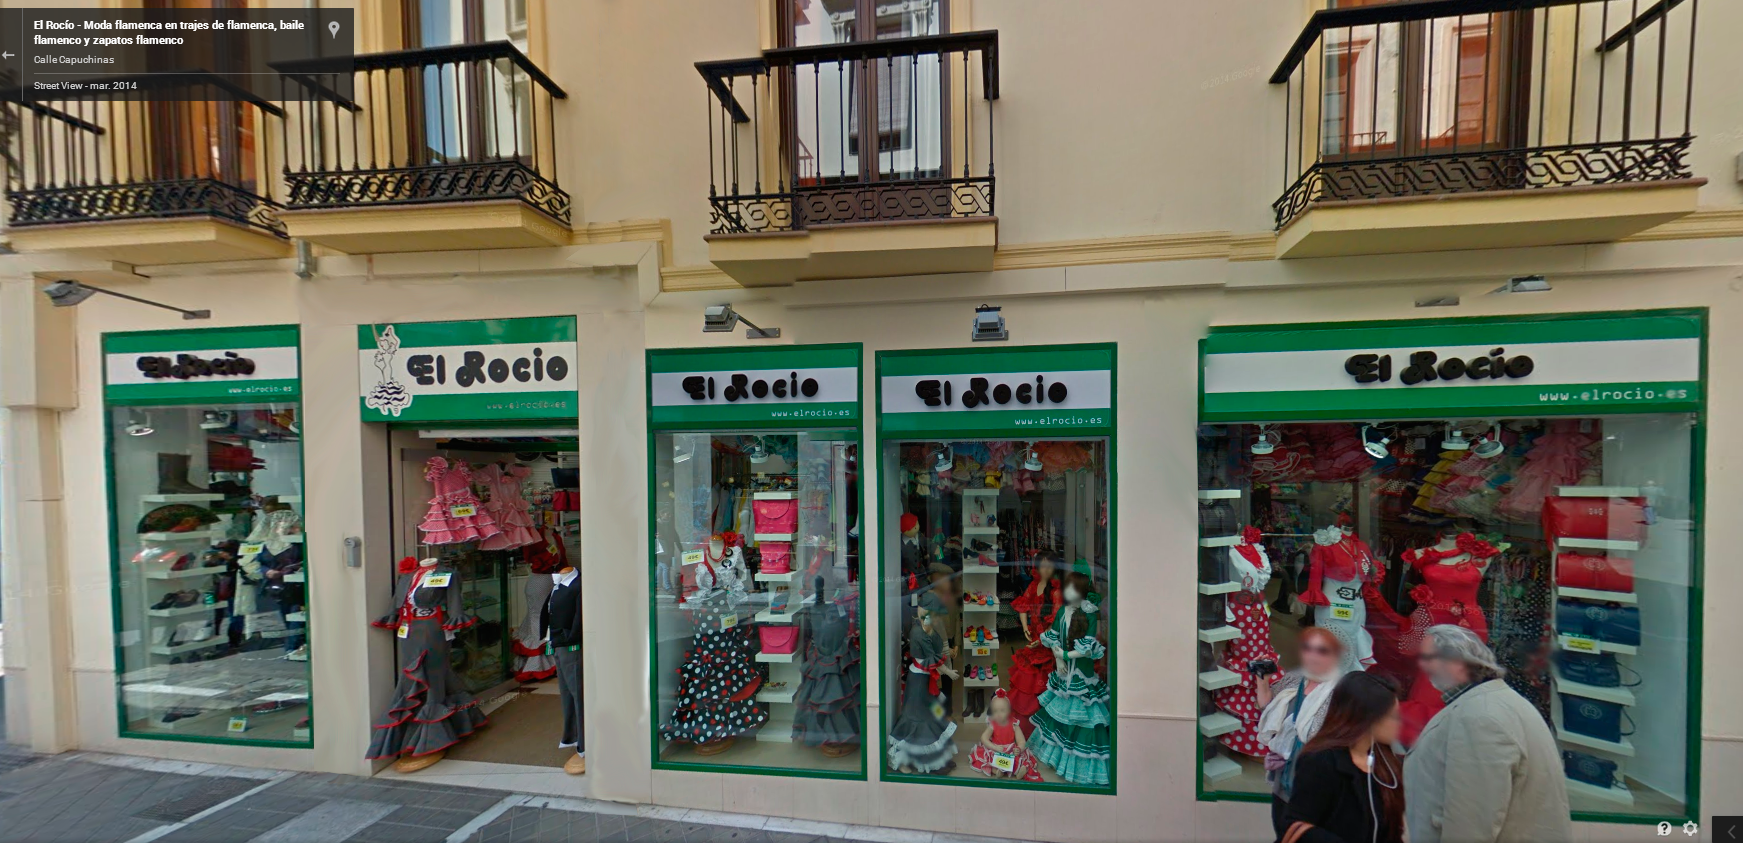 El Rocío, Trajes de Flamenca - Tienda de Granada